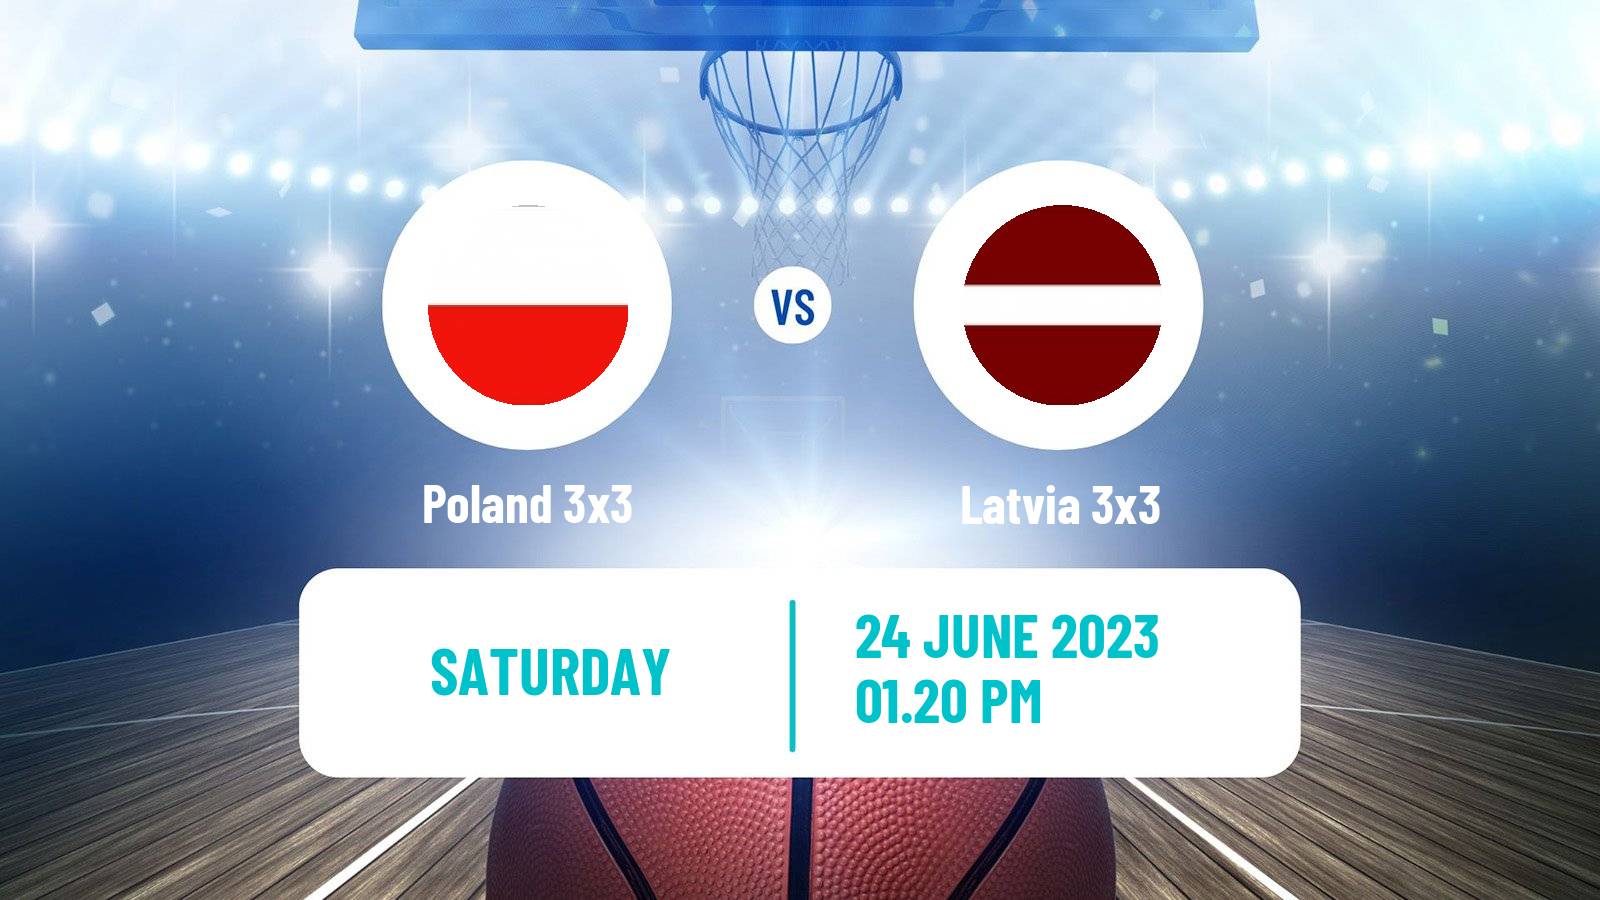 Basketball European Games 3x3  Poland 3x3 - Latvia 3x3